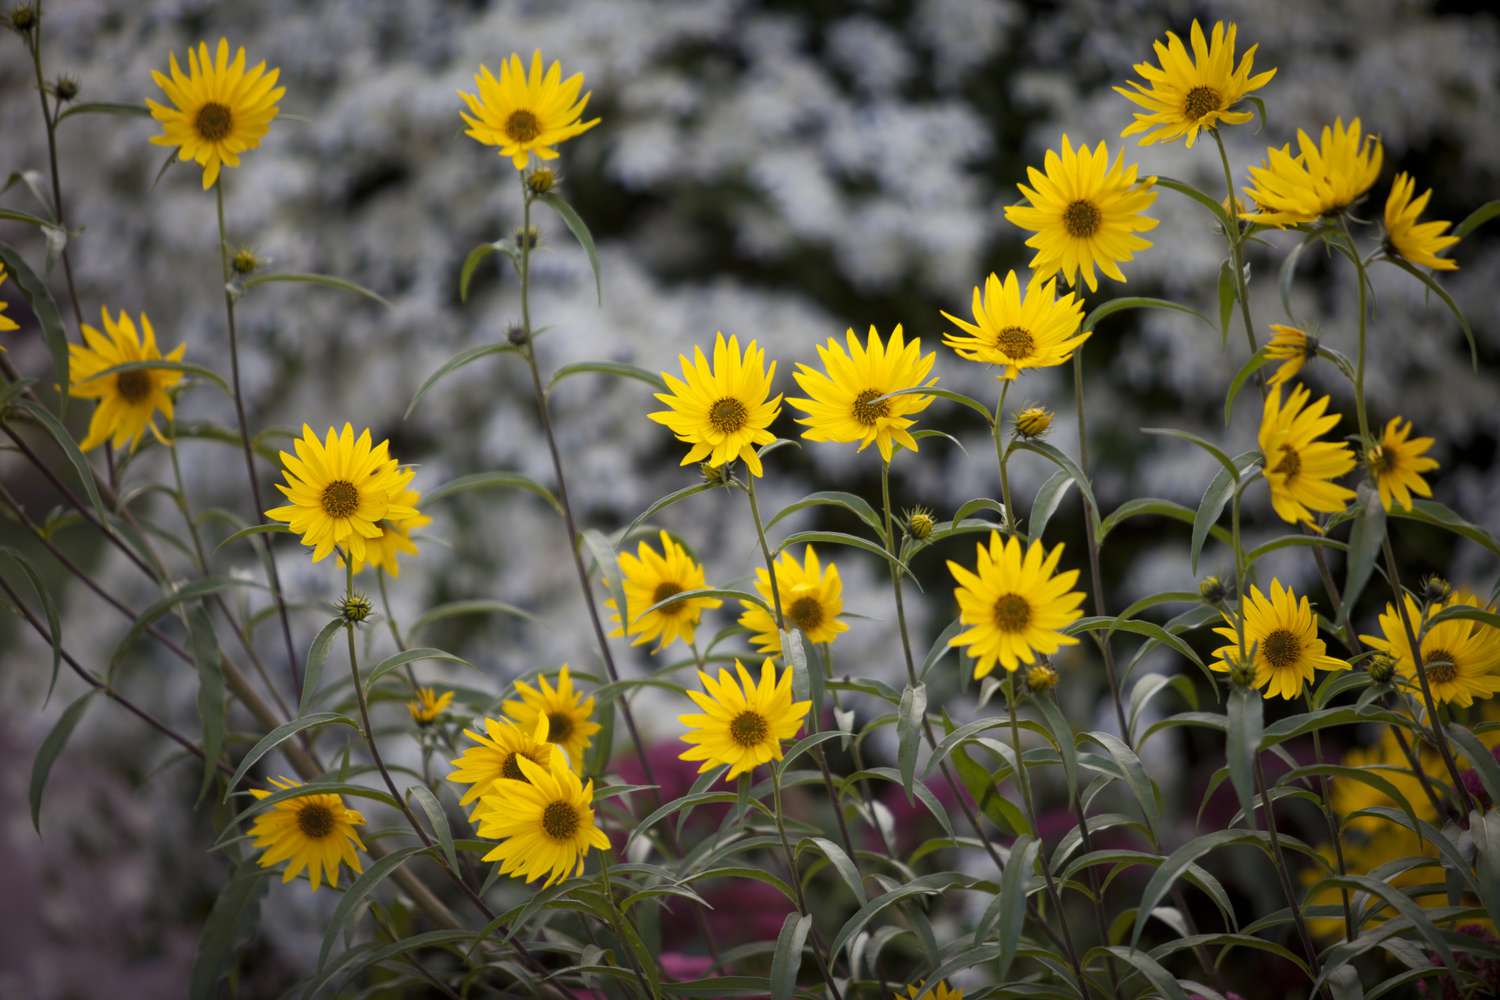 Perennial sunflowers.